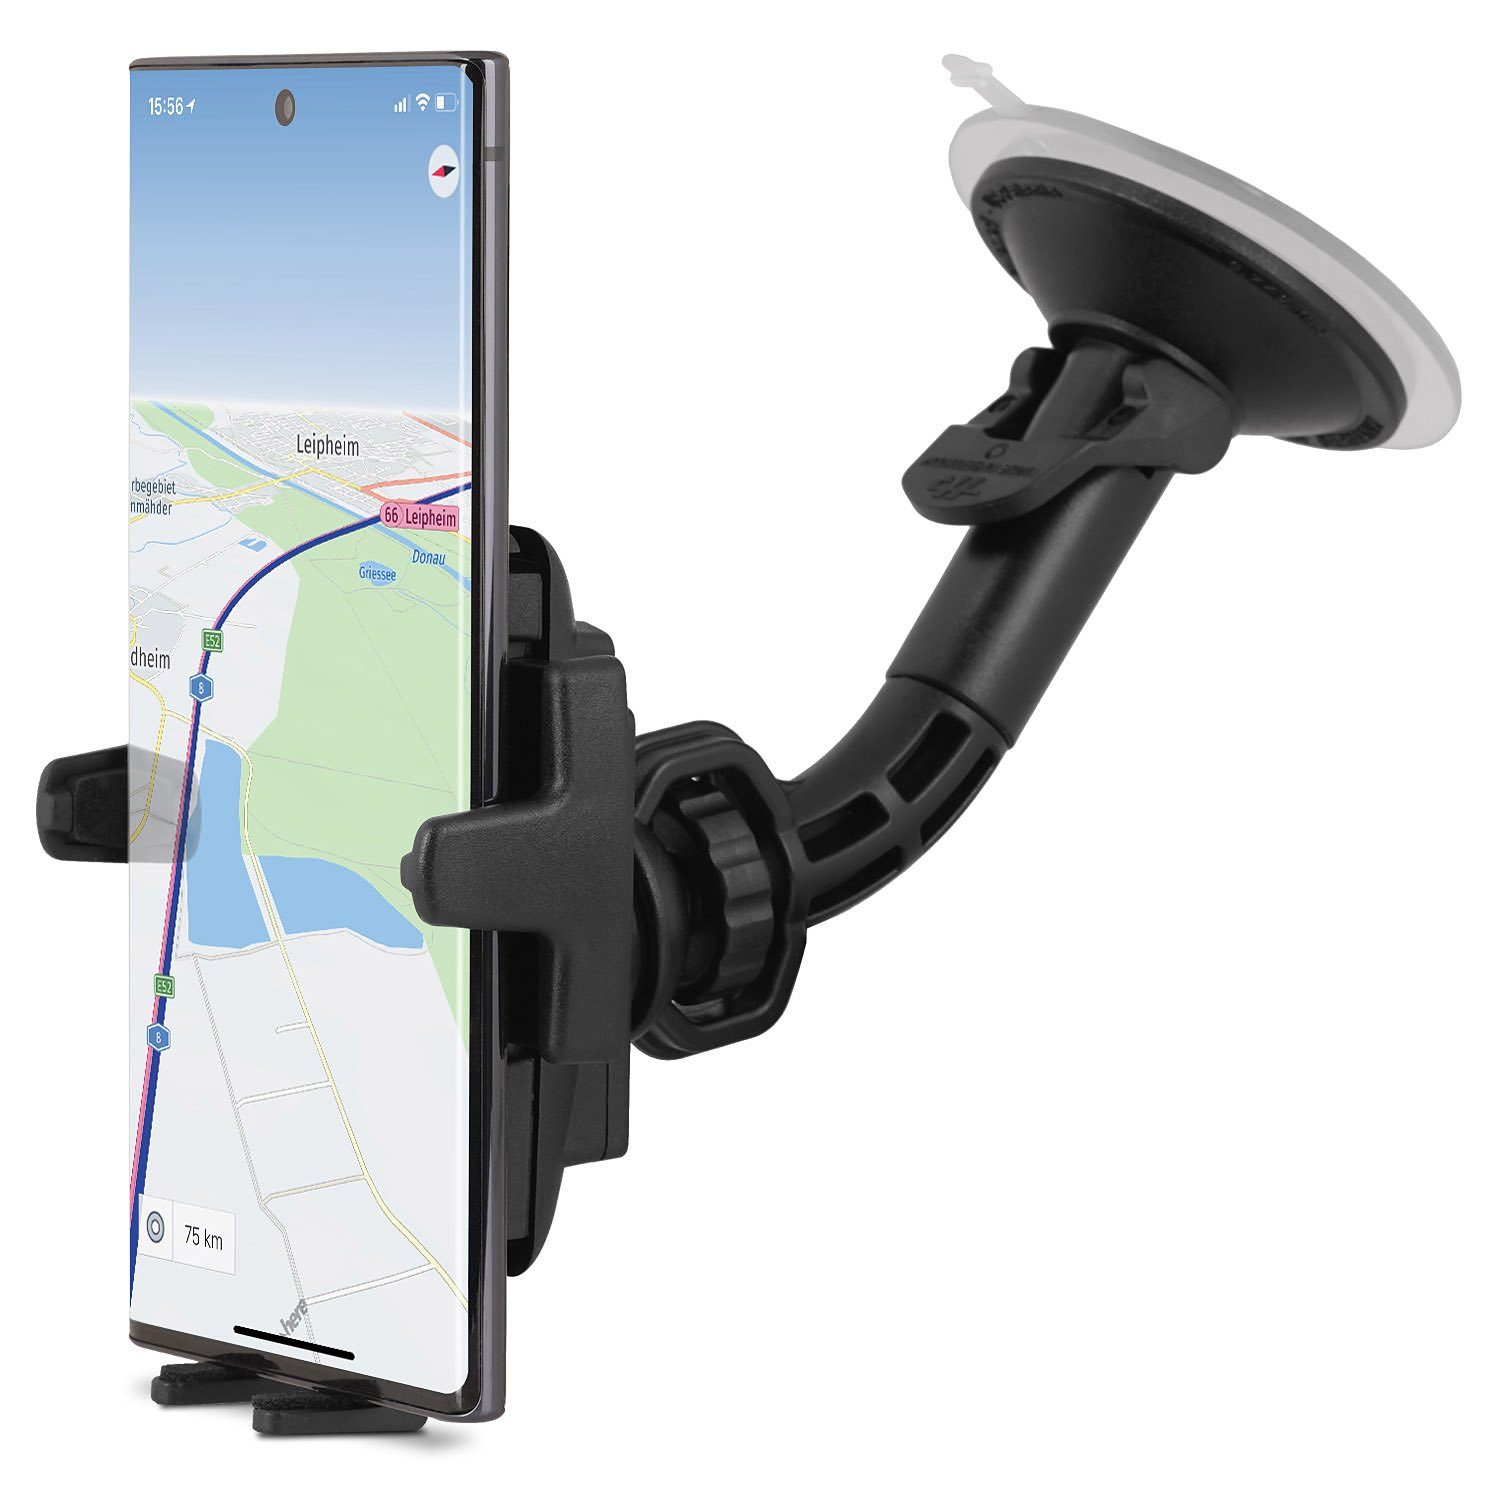 KFZ Auto Handy Halterung Halter für Samsung Galaxy S20 S10 S10 S10e S9 S8  plus online kaufen